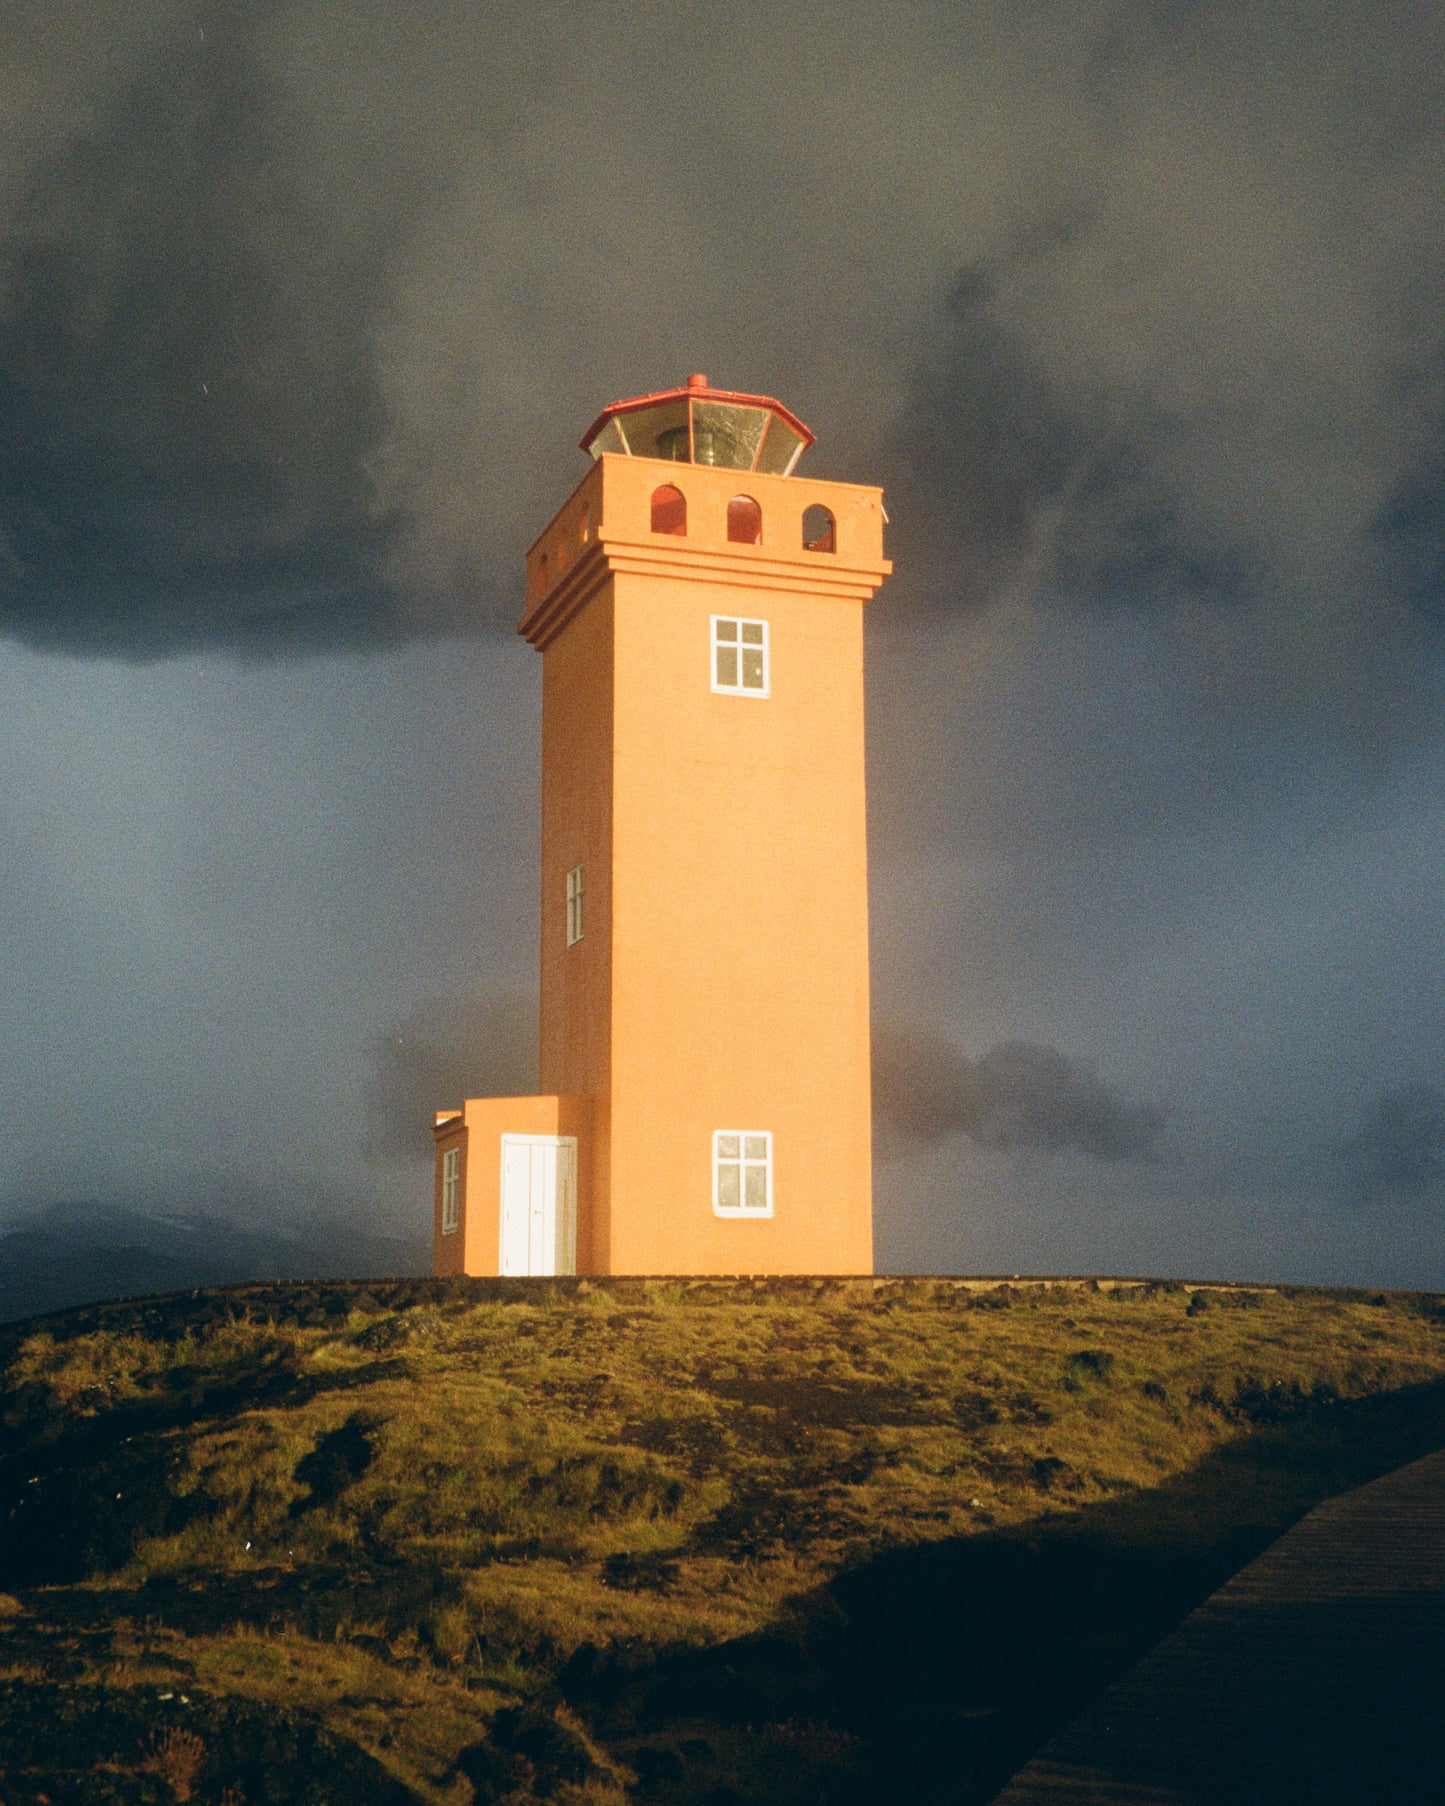 Sv örtuloft Lighthouse